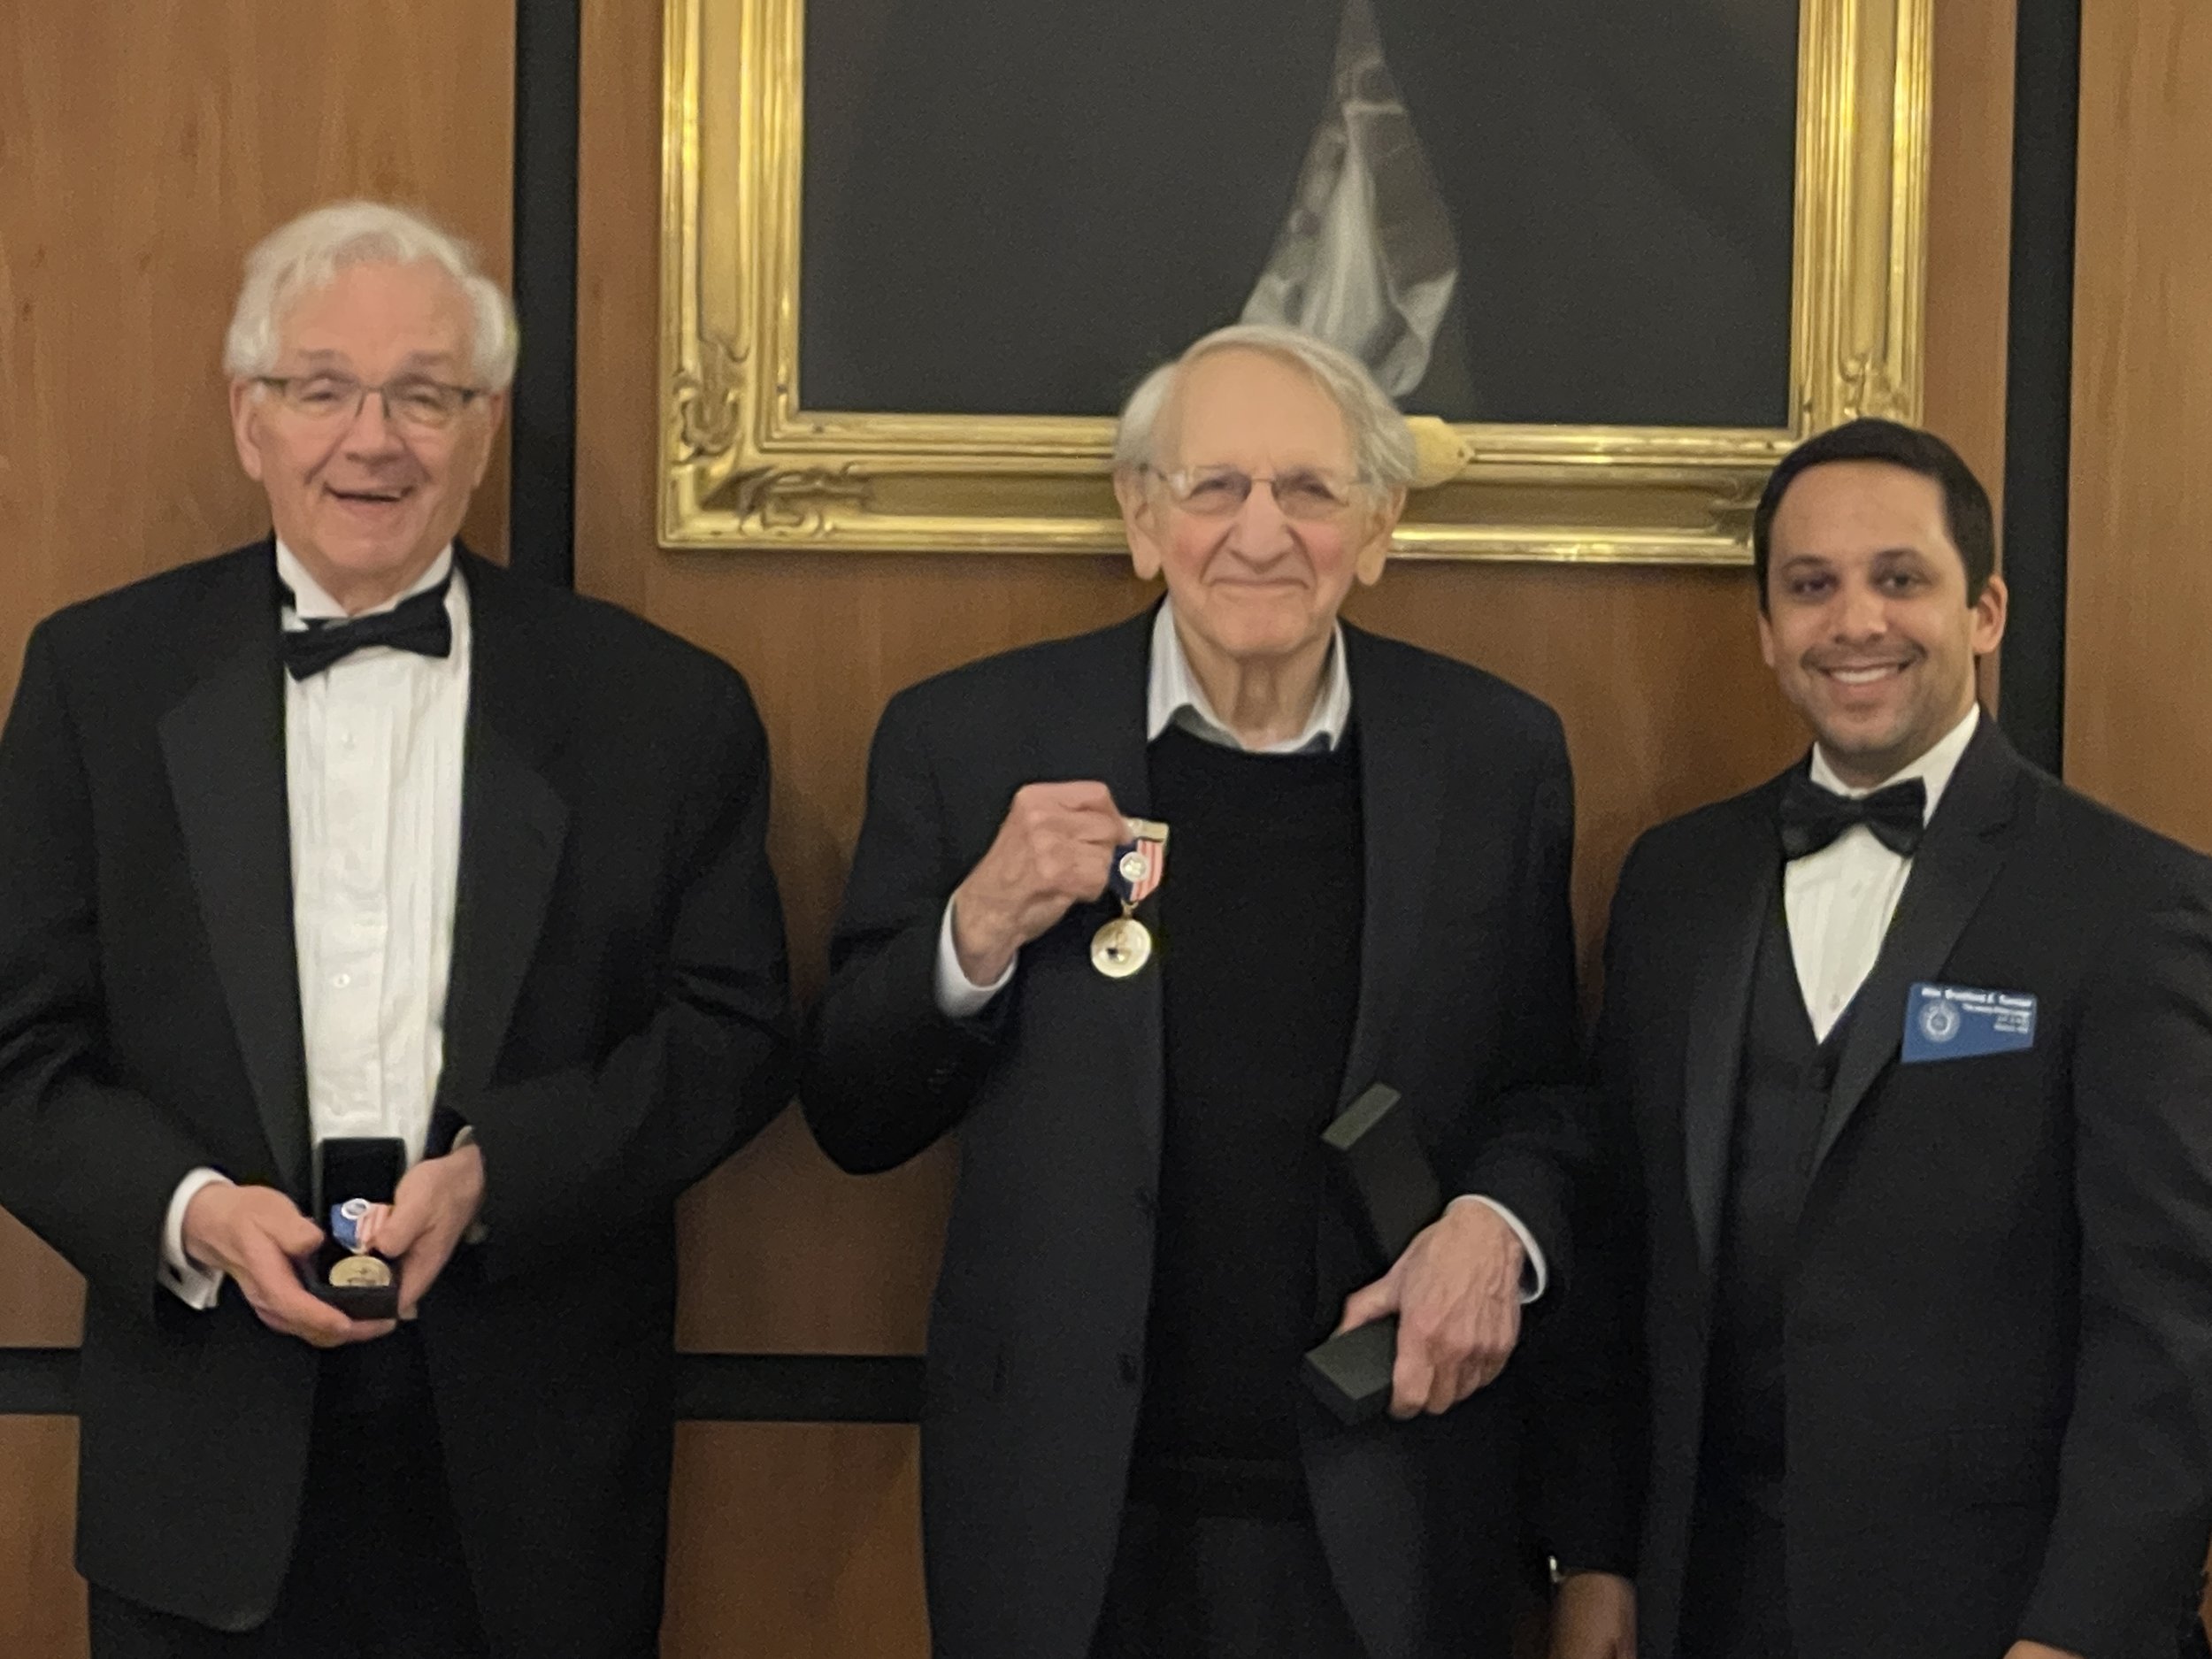  Military Service Medal recipients, R.W. Mark Lichtenstein and Wor. Dan Weiner, with Worshipful Master, Wor. Bradford Turnier 